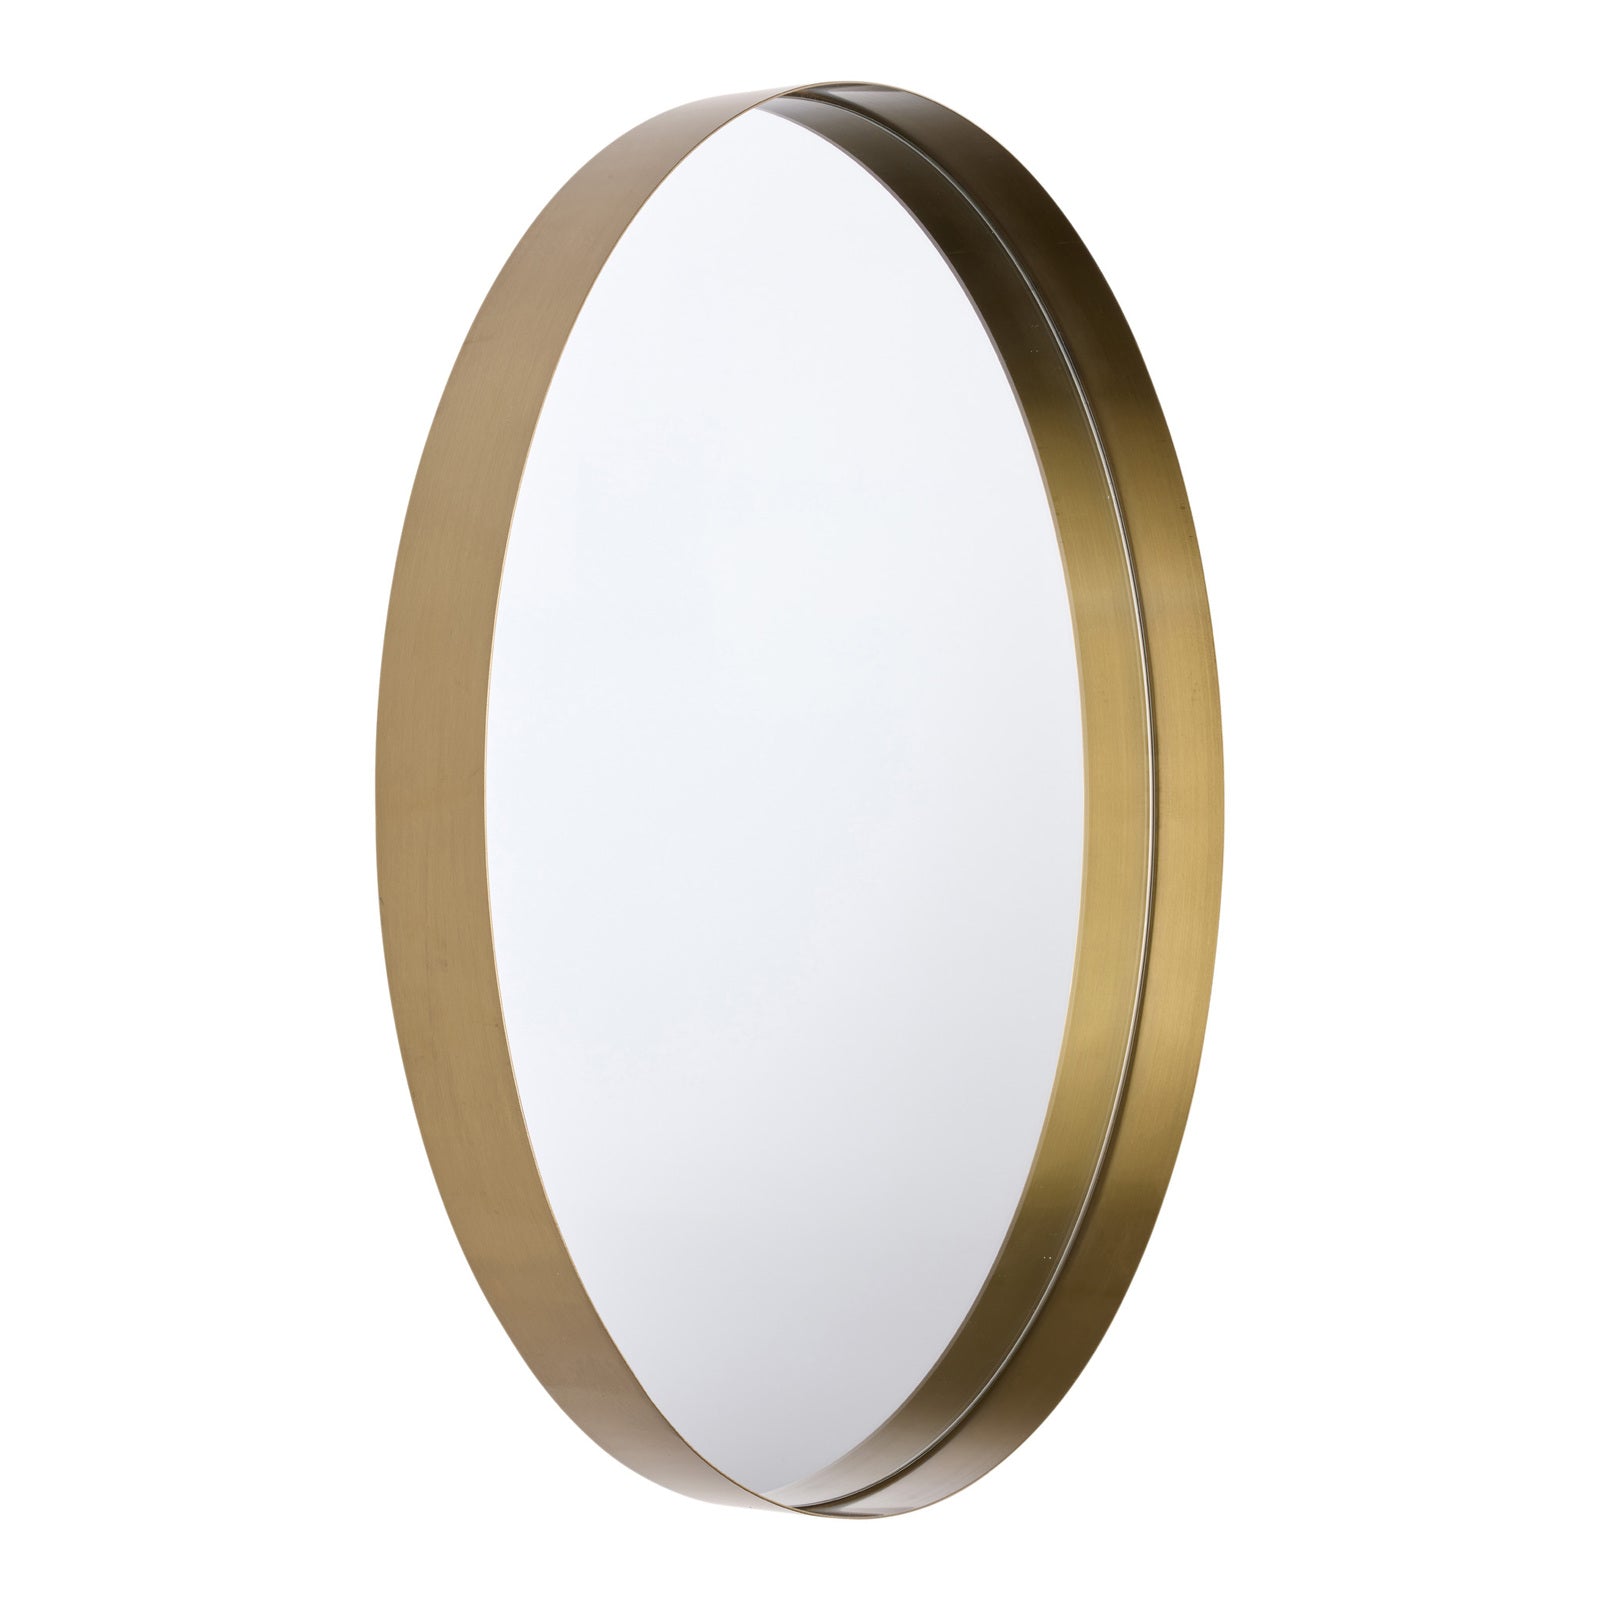 GEMMA 80cm Stainless Steel Mirror - Champagne Gold